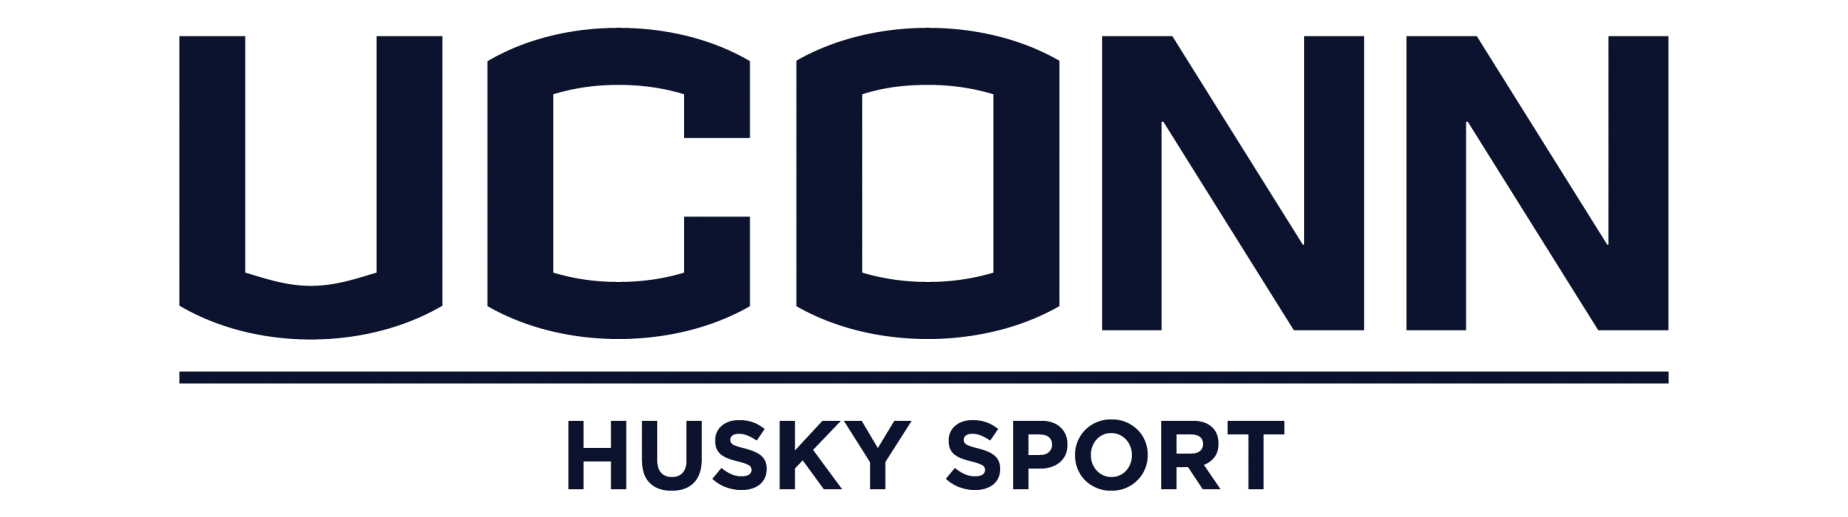 Husky Sport